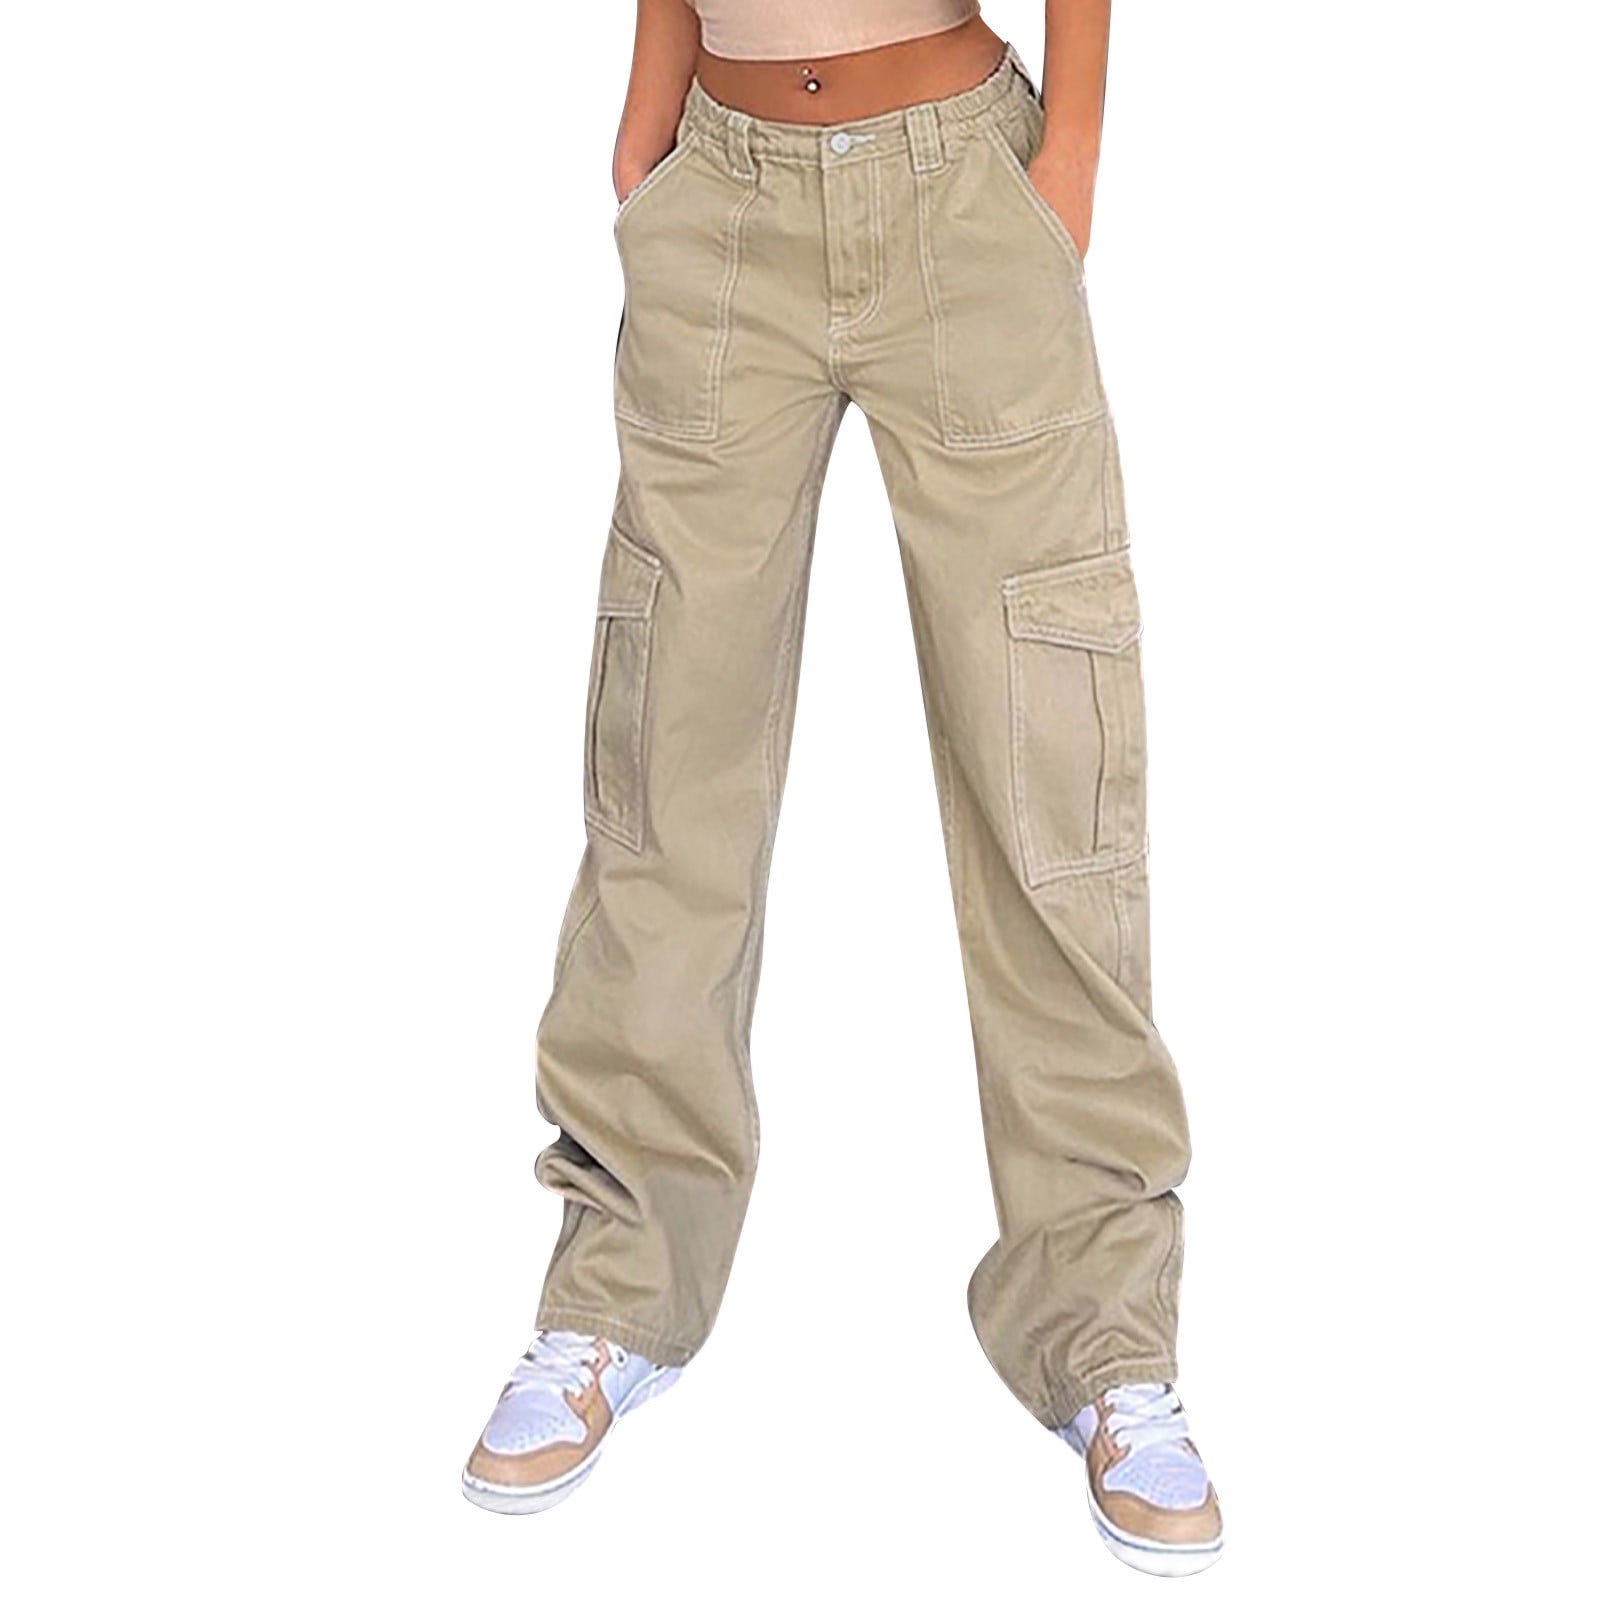 BKQCNKM Womens Jeans for Women Trendy Women Cargo Pants Loose Low Waist ...